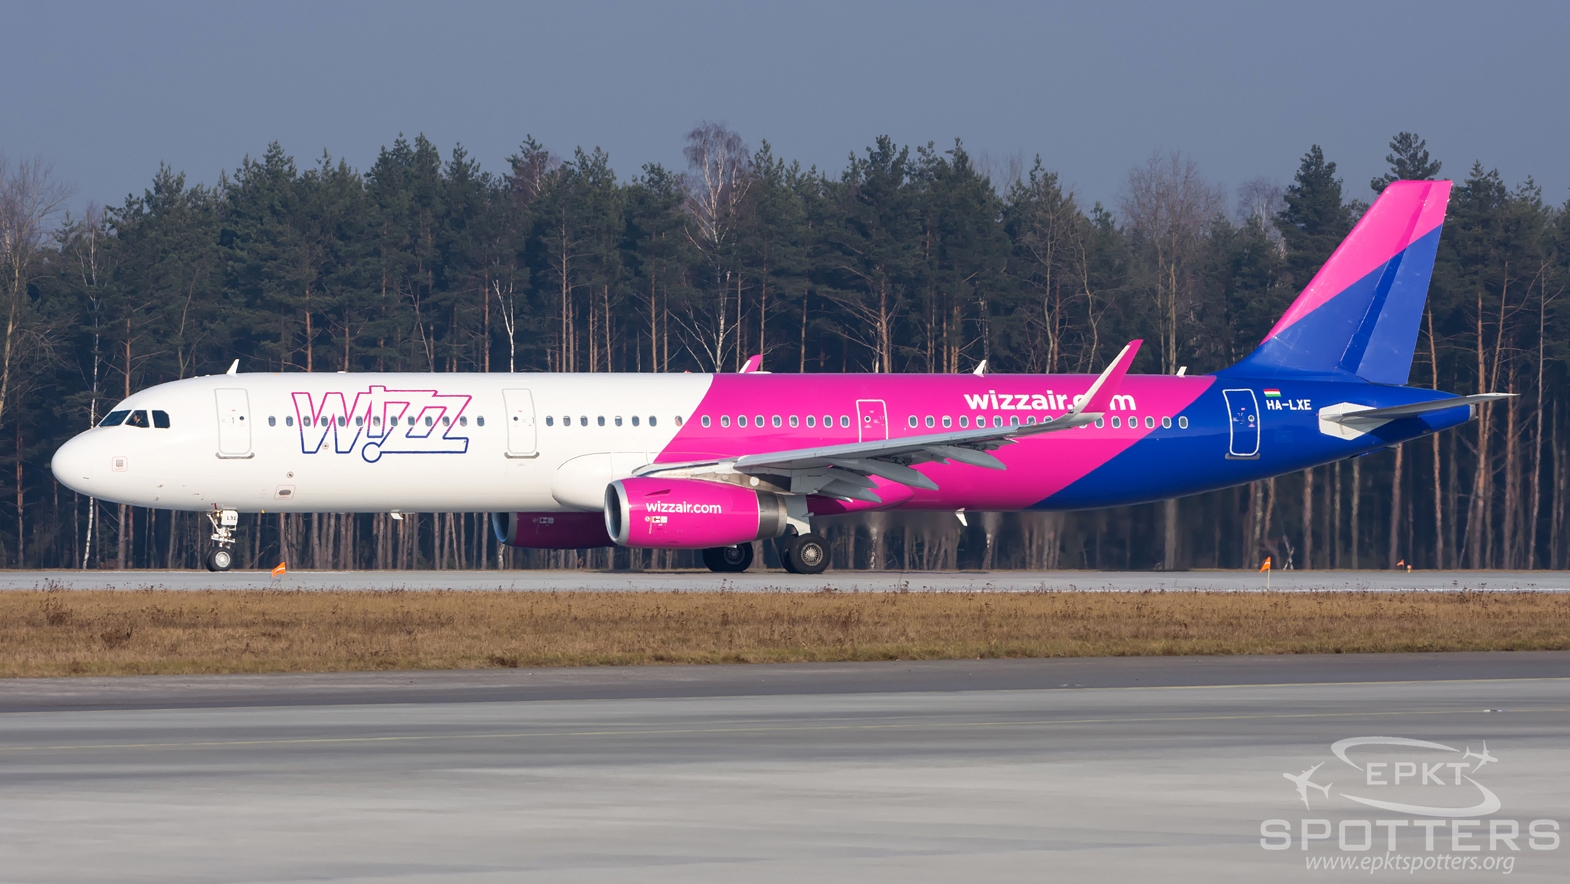 HA-LXE - Airbus A321 -231 (Wizz Air) / Pyrzowice - Katowice Poland [EPKT/KTW]